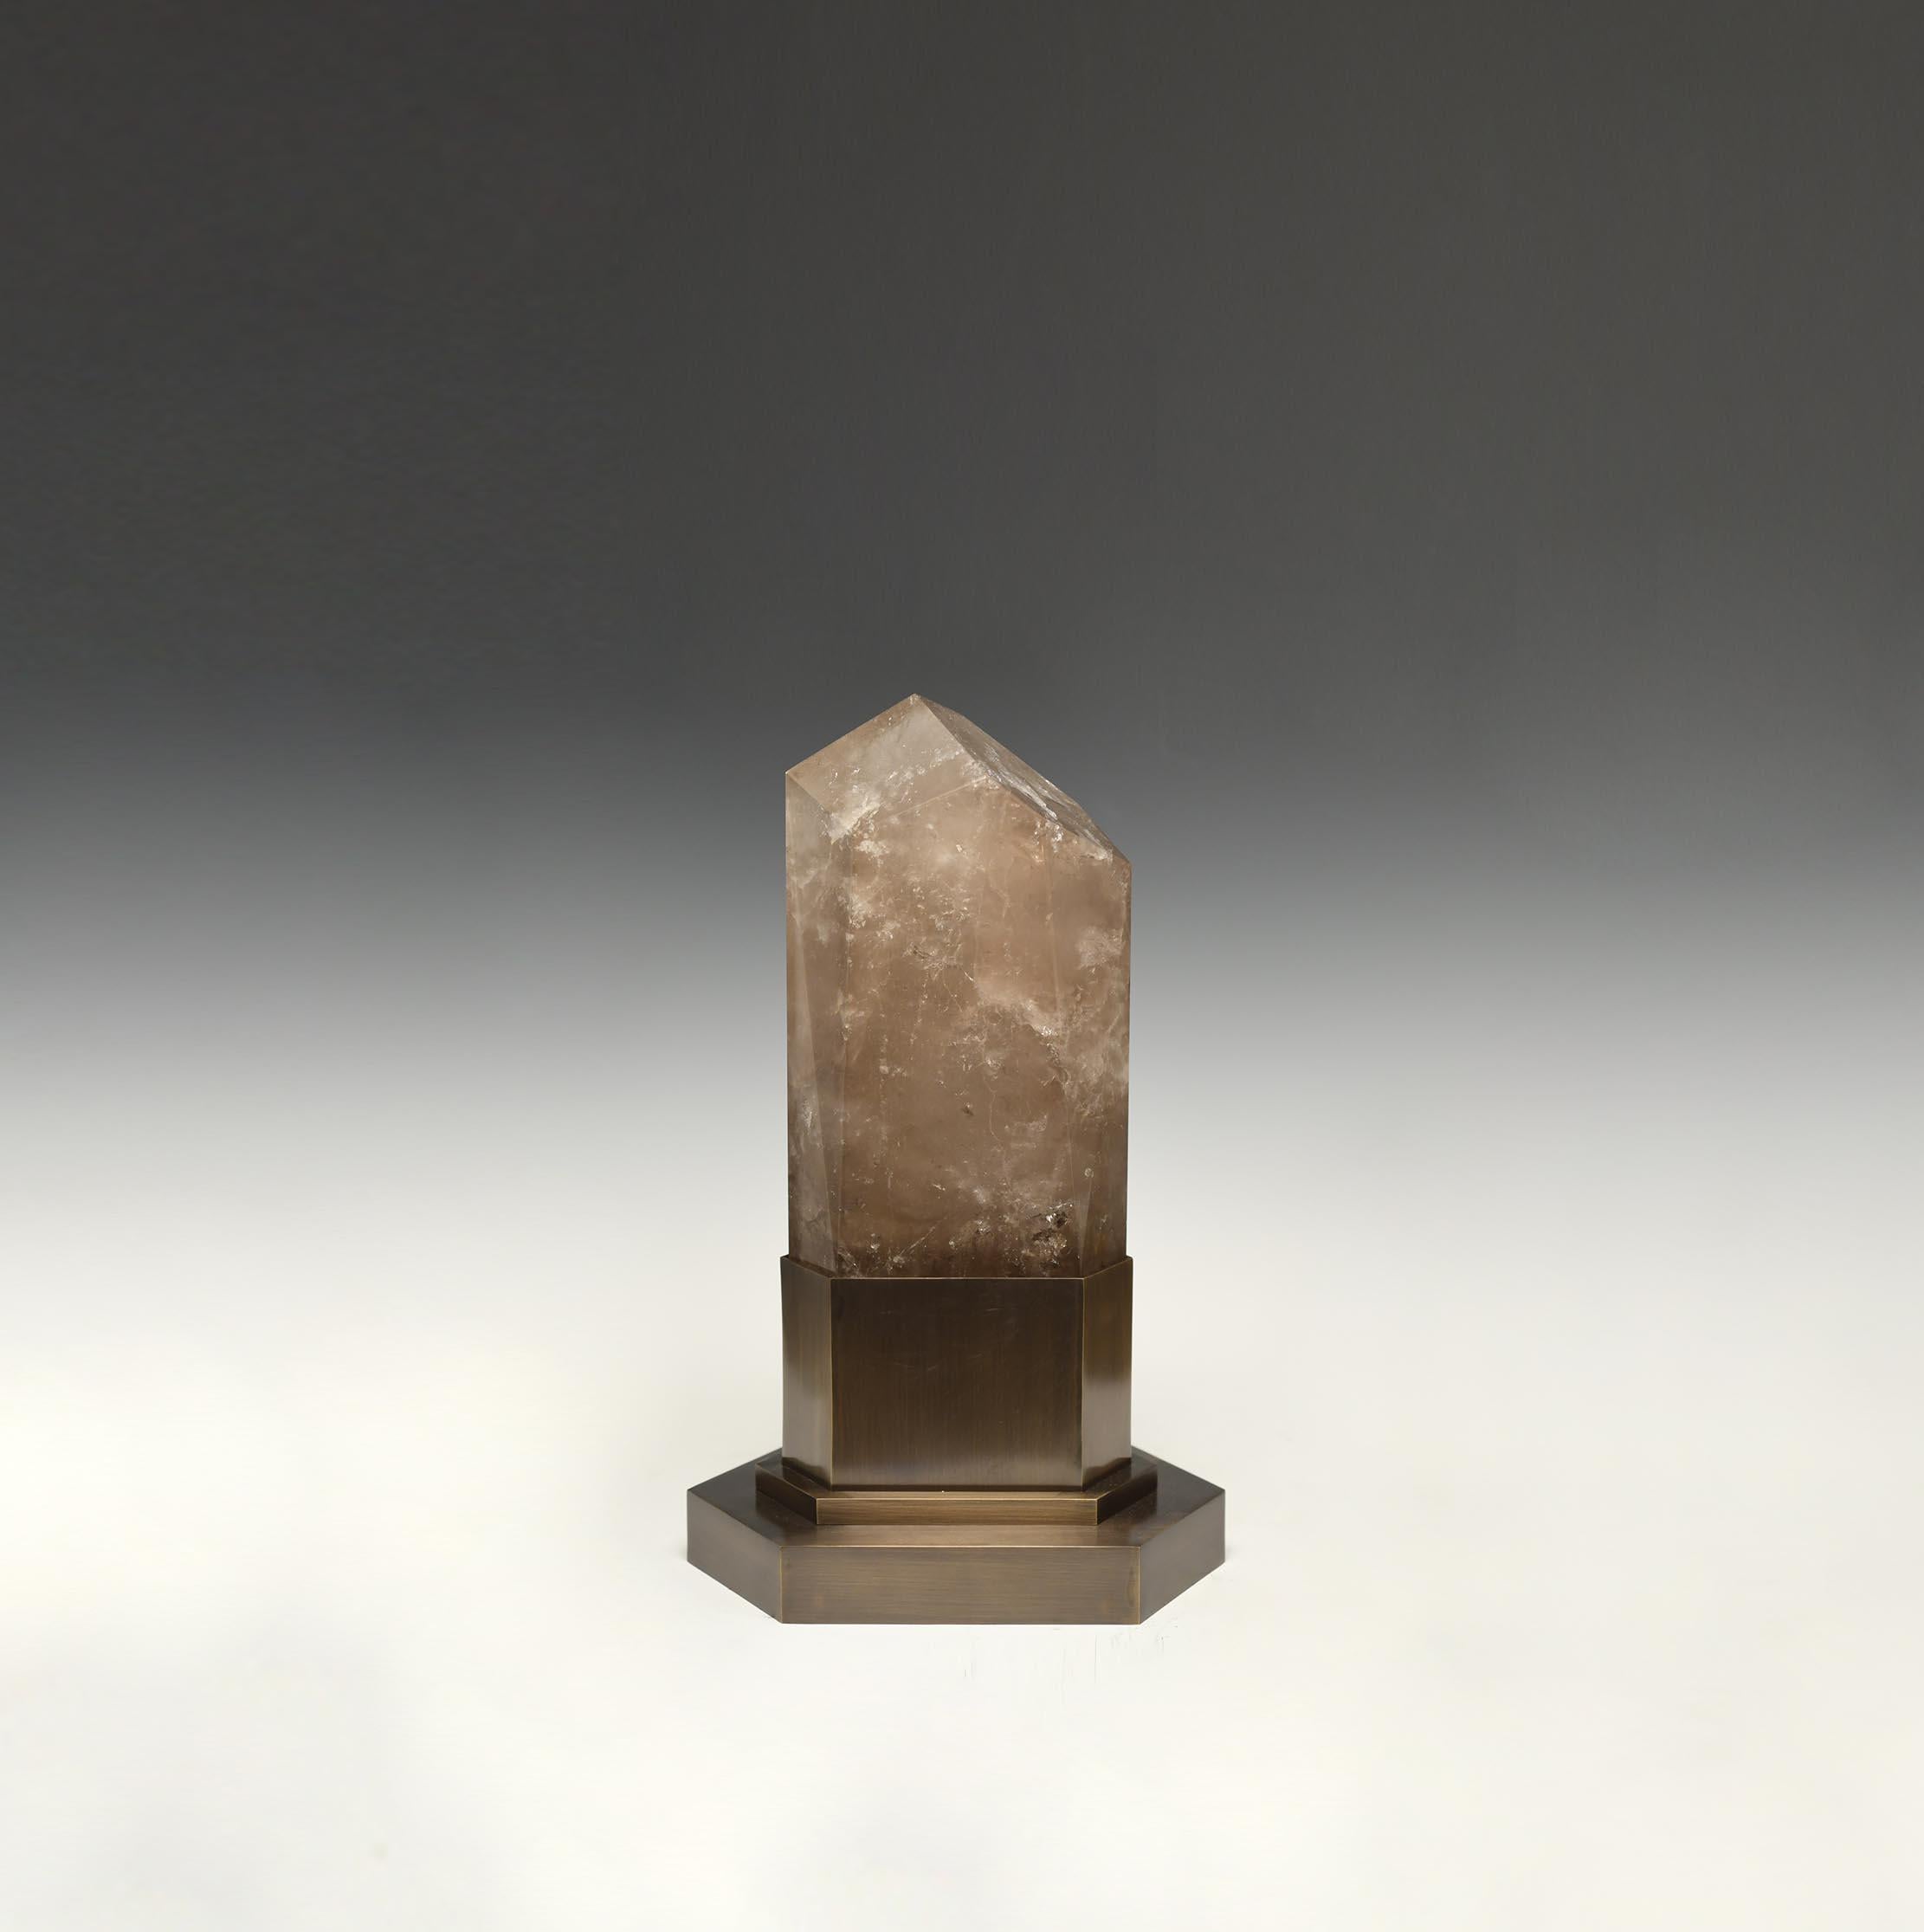 Eine Obeliskenleuchte in rauchigem Bergkristall mit einem Sockel aus antikem Messing. Erstellt von Phoenix Gallery, NYC. 
Zwei Steckdosen installiert. Lieferung von zwei warmen LED-Leuchten. 120w max.
Kundenspezifische Größe verfügbar.